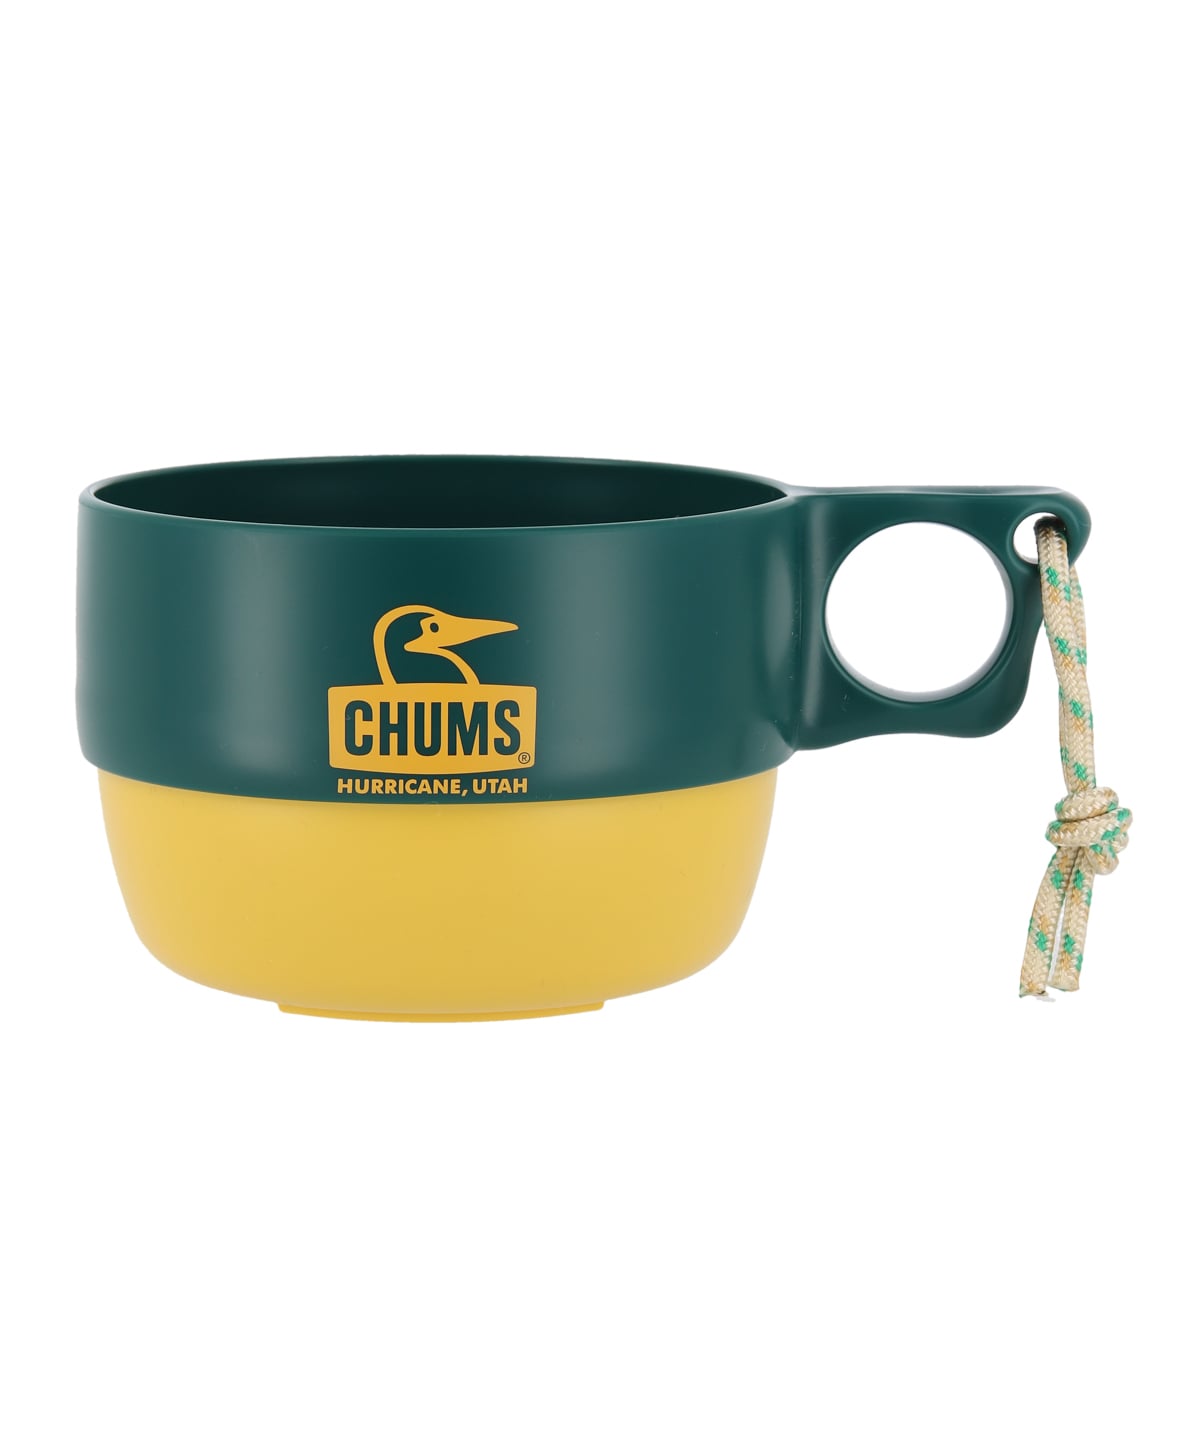 [購買] Chums Camper Soup Cup (350ml)